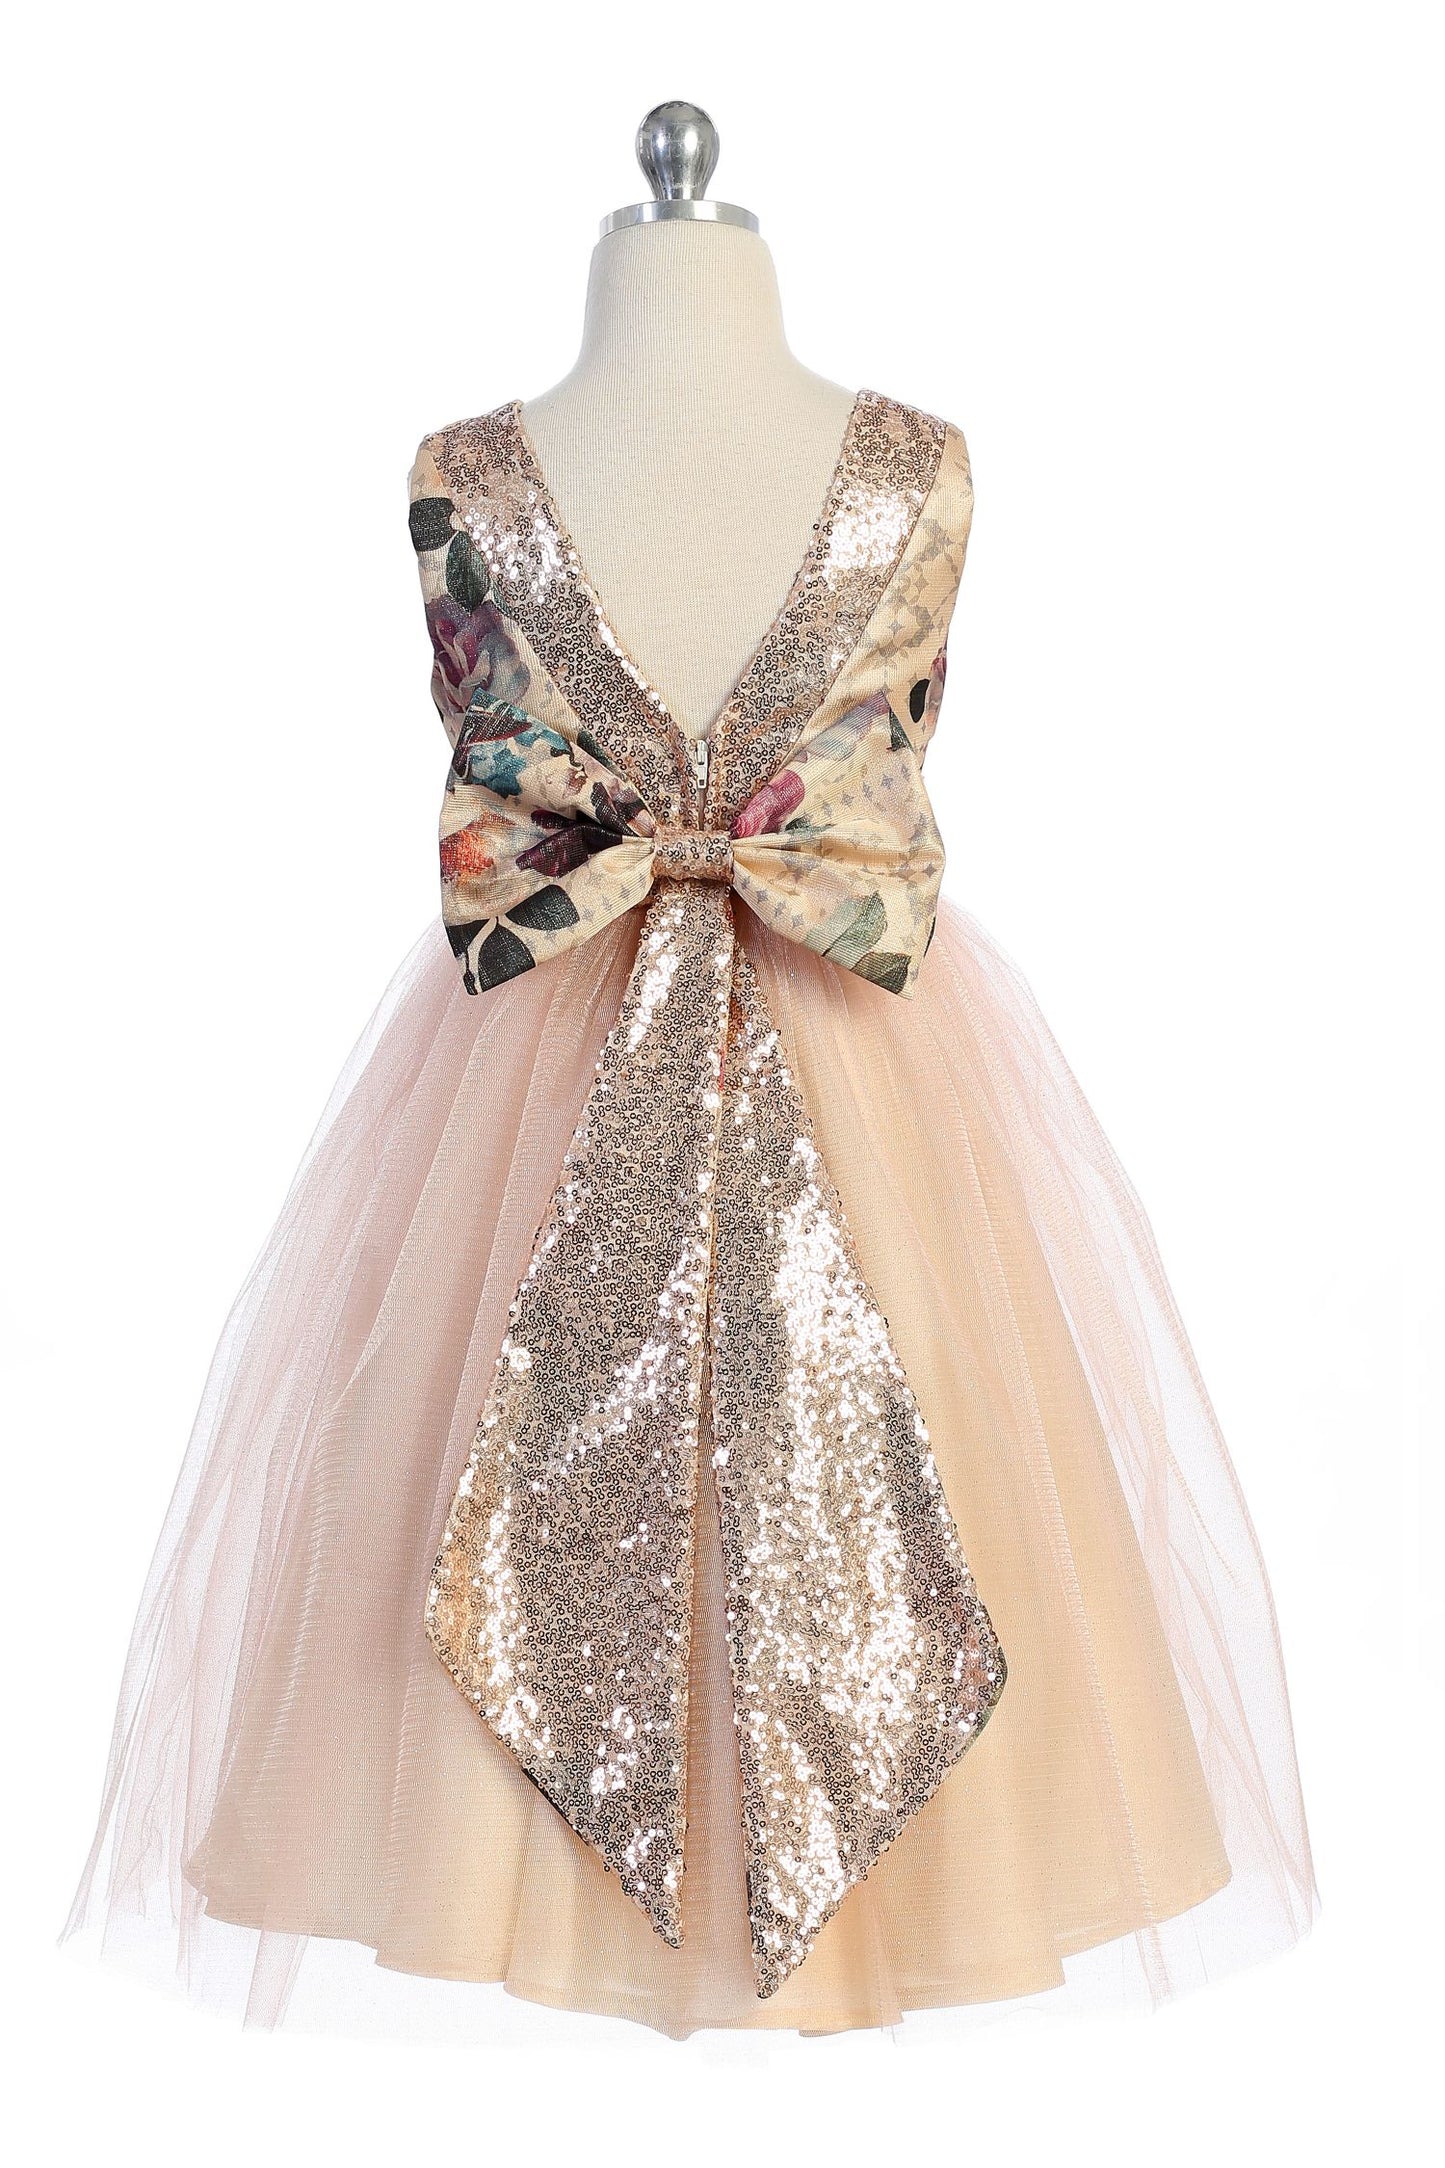 Vintage Floral Rose Gold Sequin Back V Girl Party Dress by AS520 Kids Dream - Girl Formal Dresses